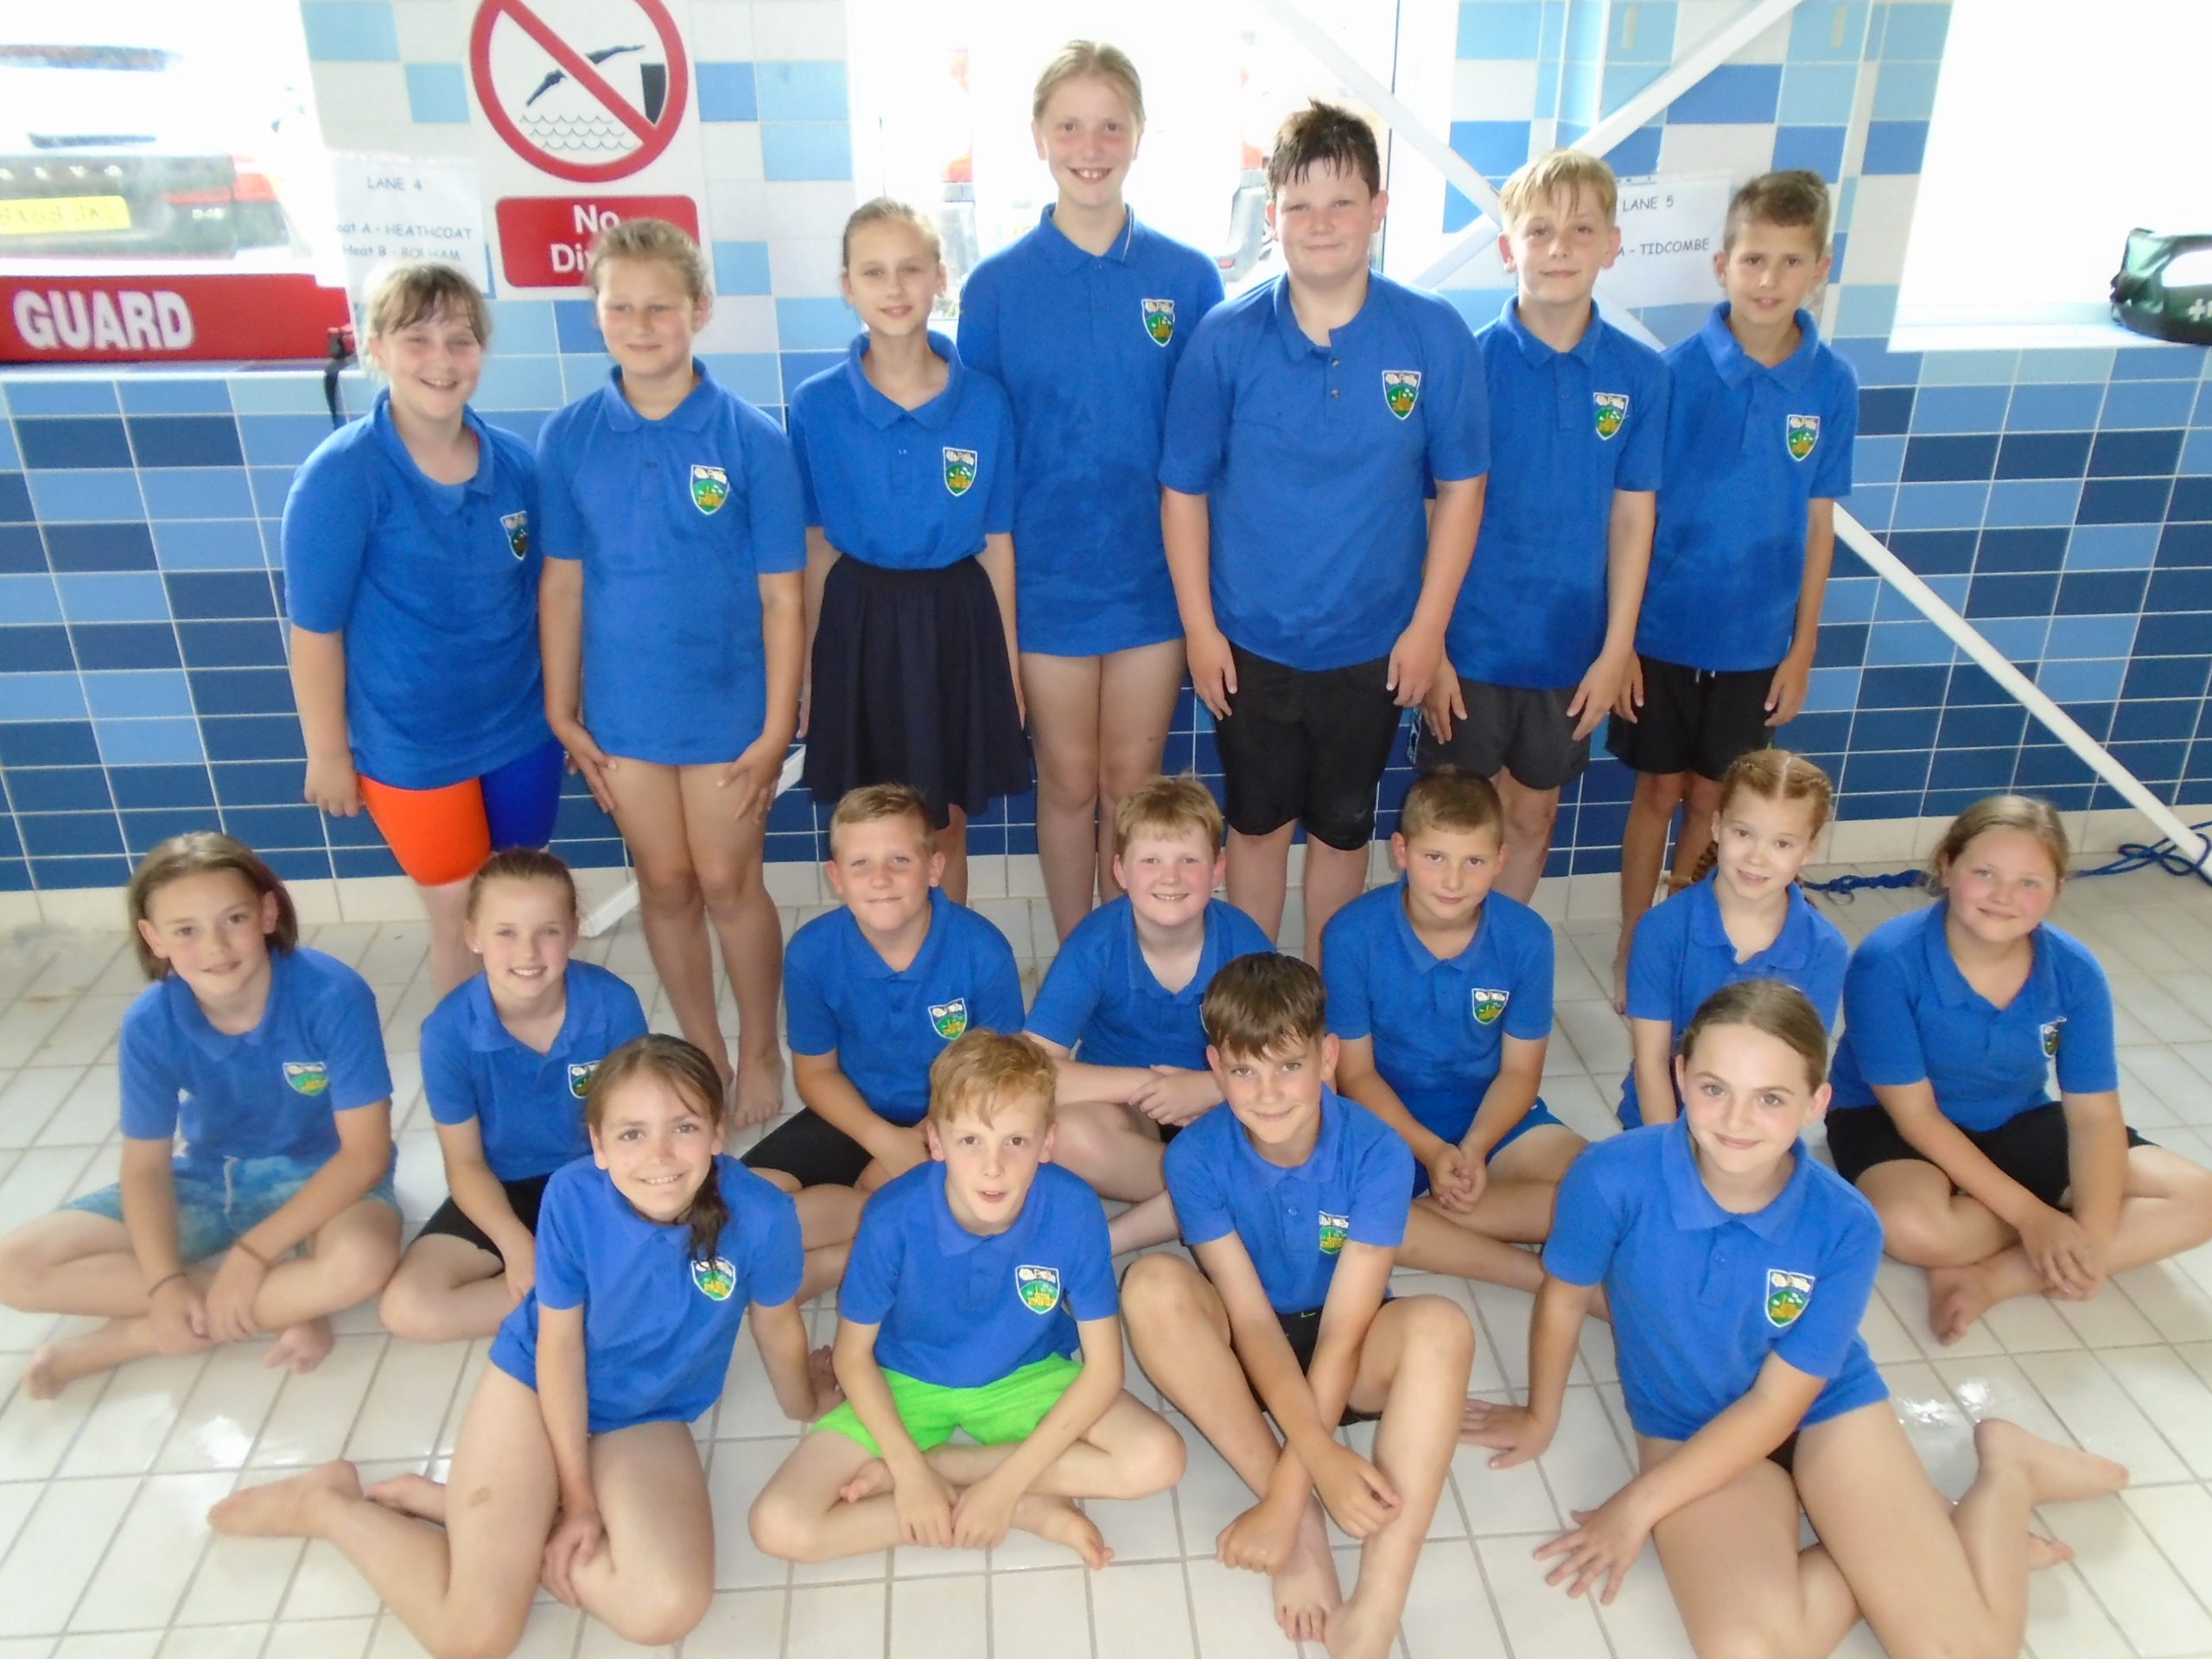 Swim gala - Heathcoat Primary School